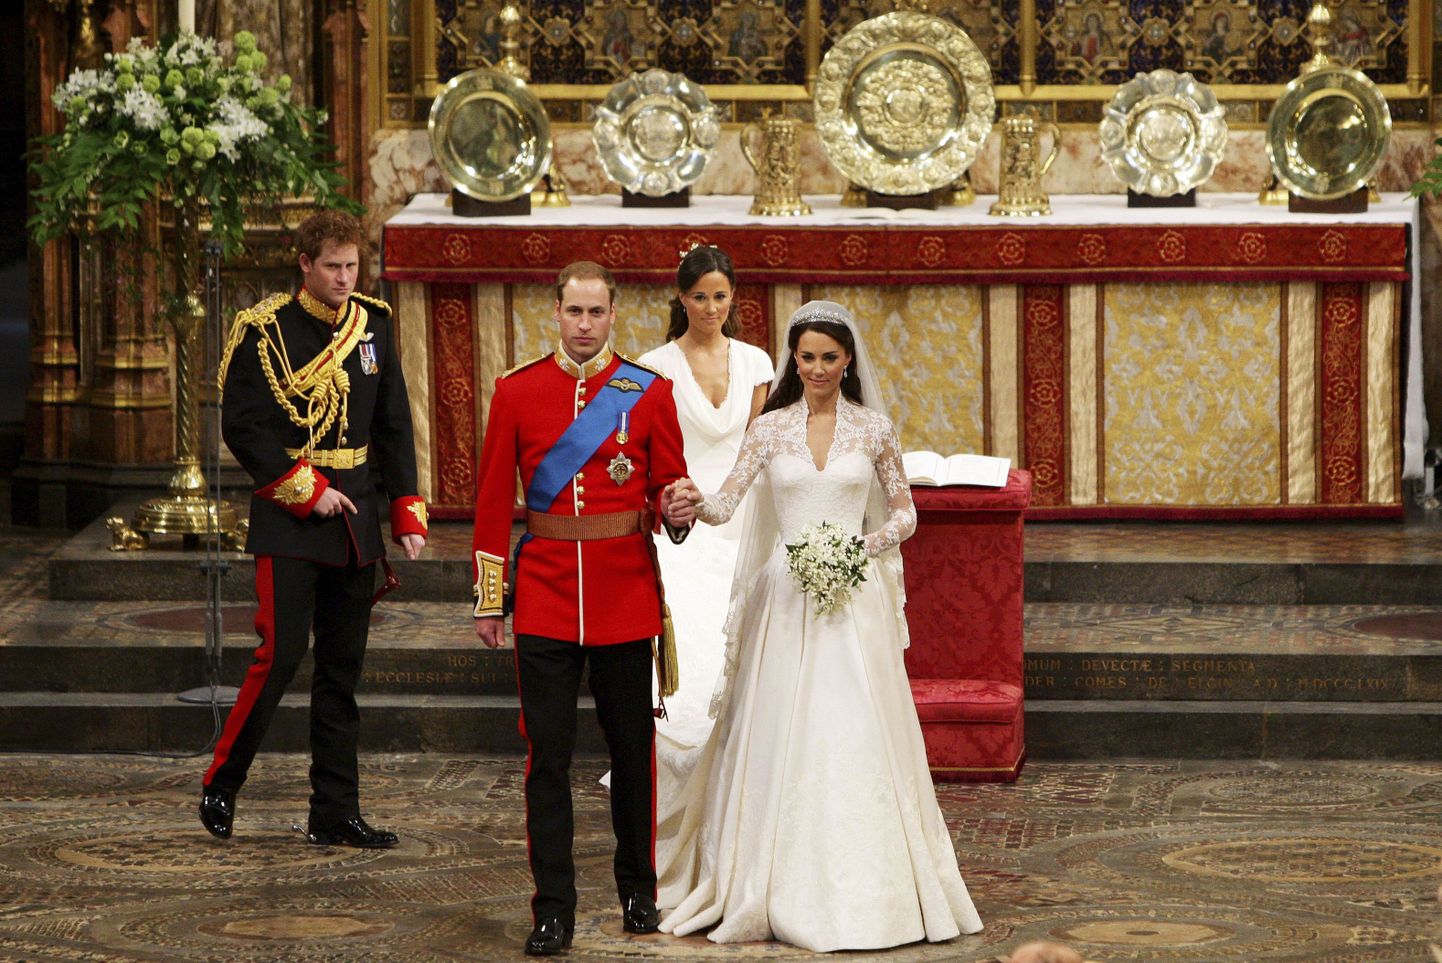 Prints William ja ta abikaasa Catherine lahkumas Westminster Abbeyst. Nende seljataga on prints Harry ja Pippa Middleton